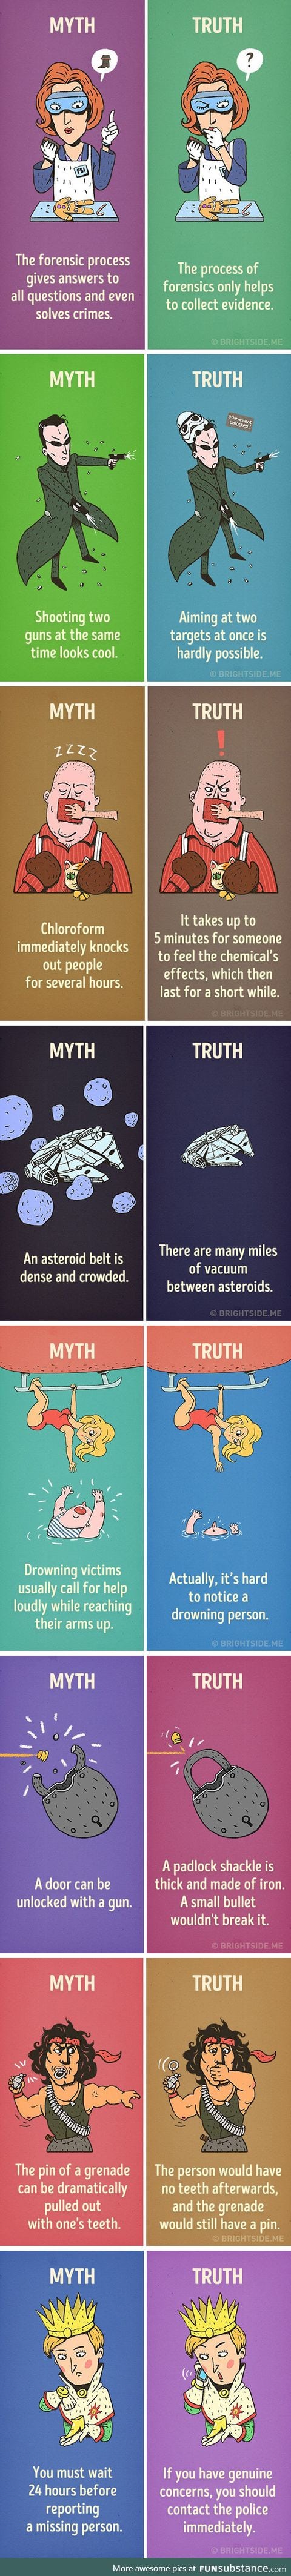 Myth and Truth